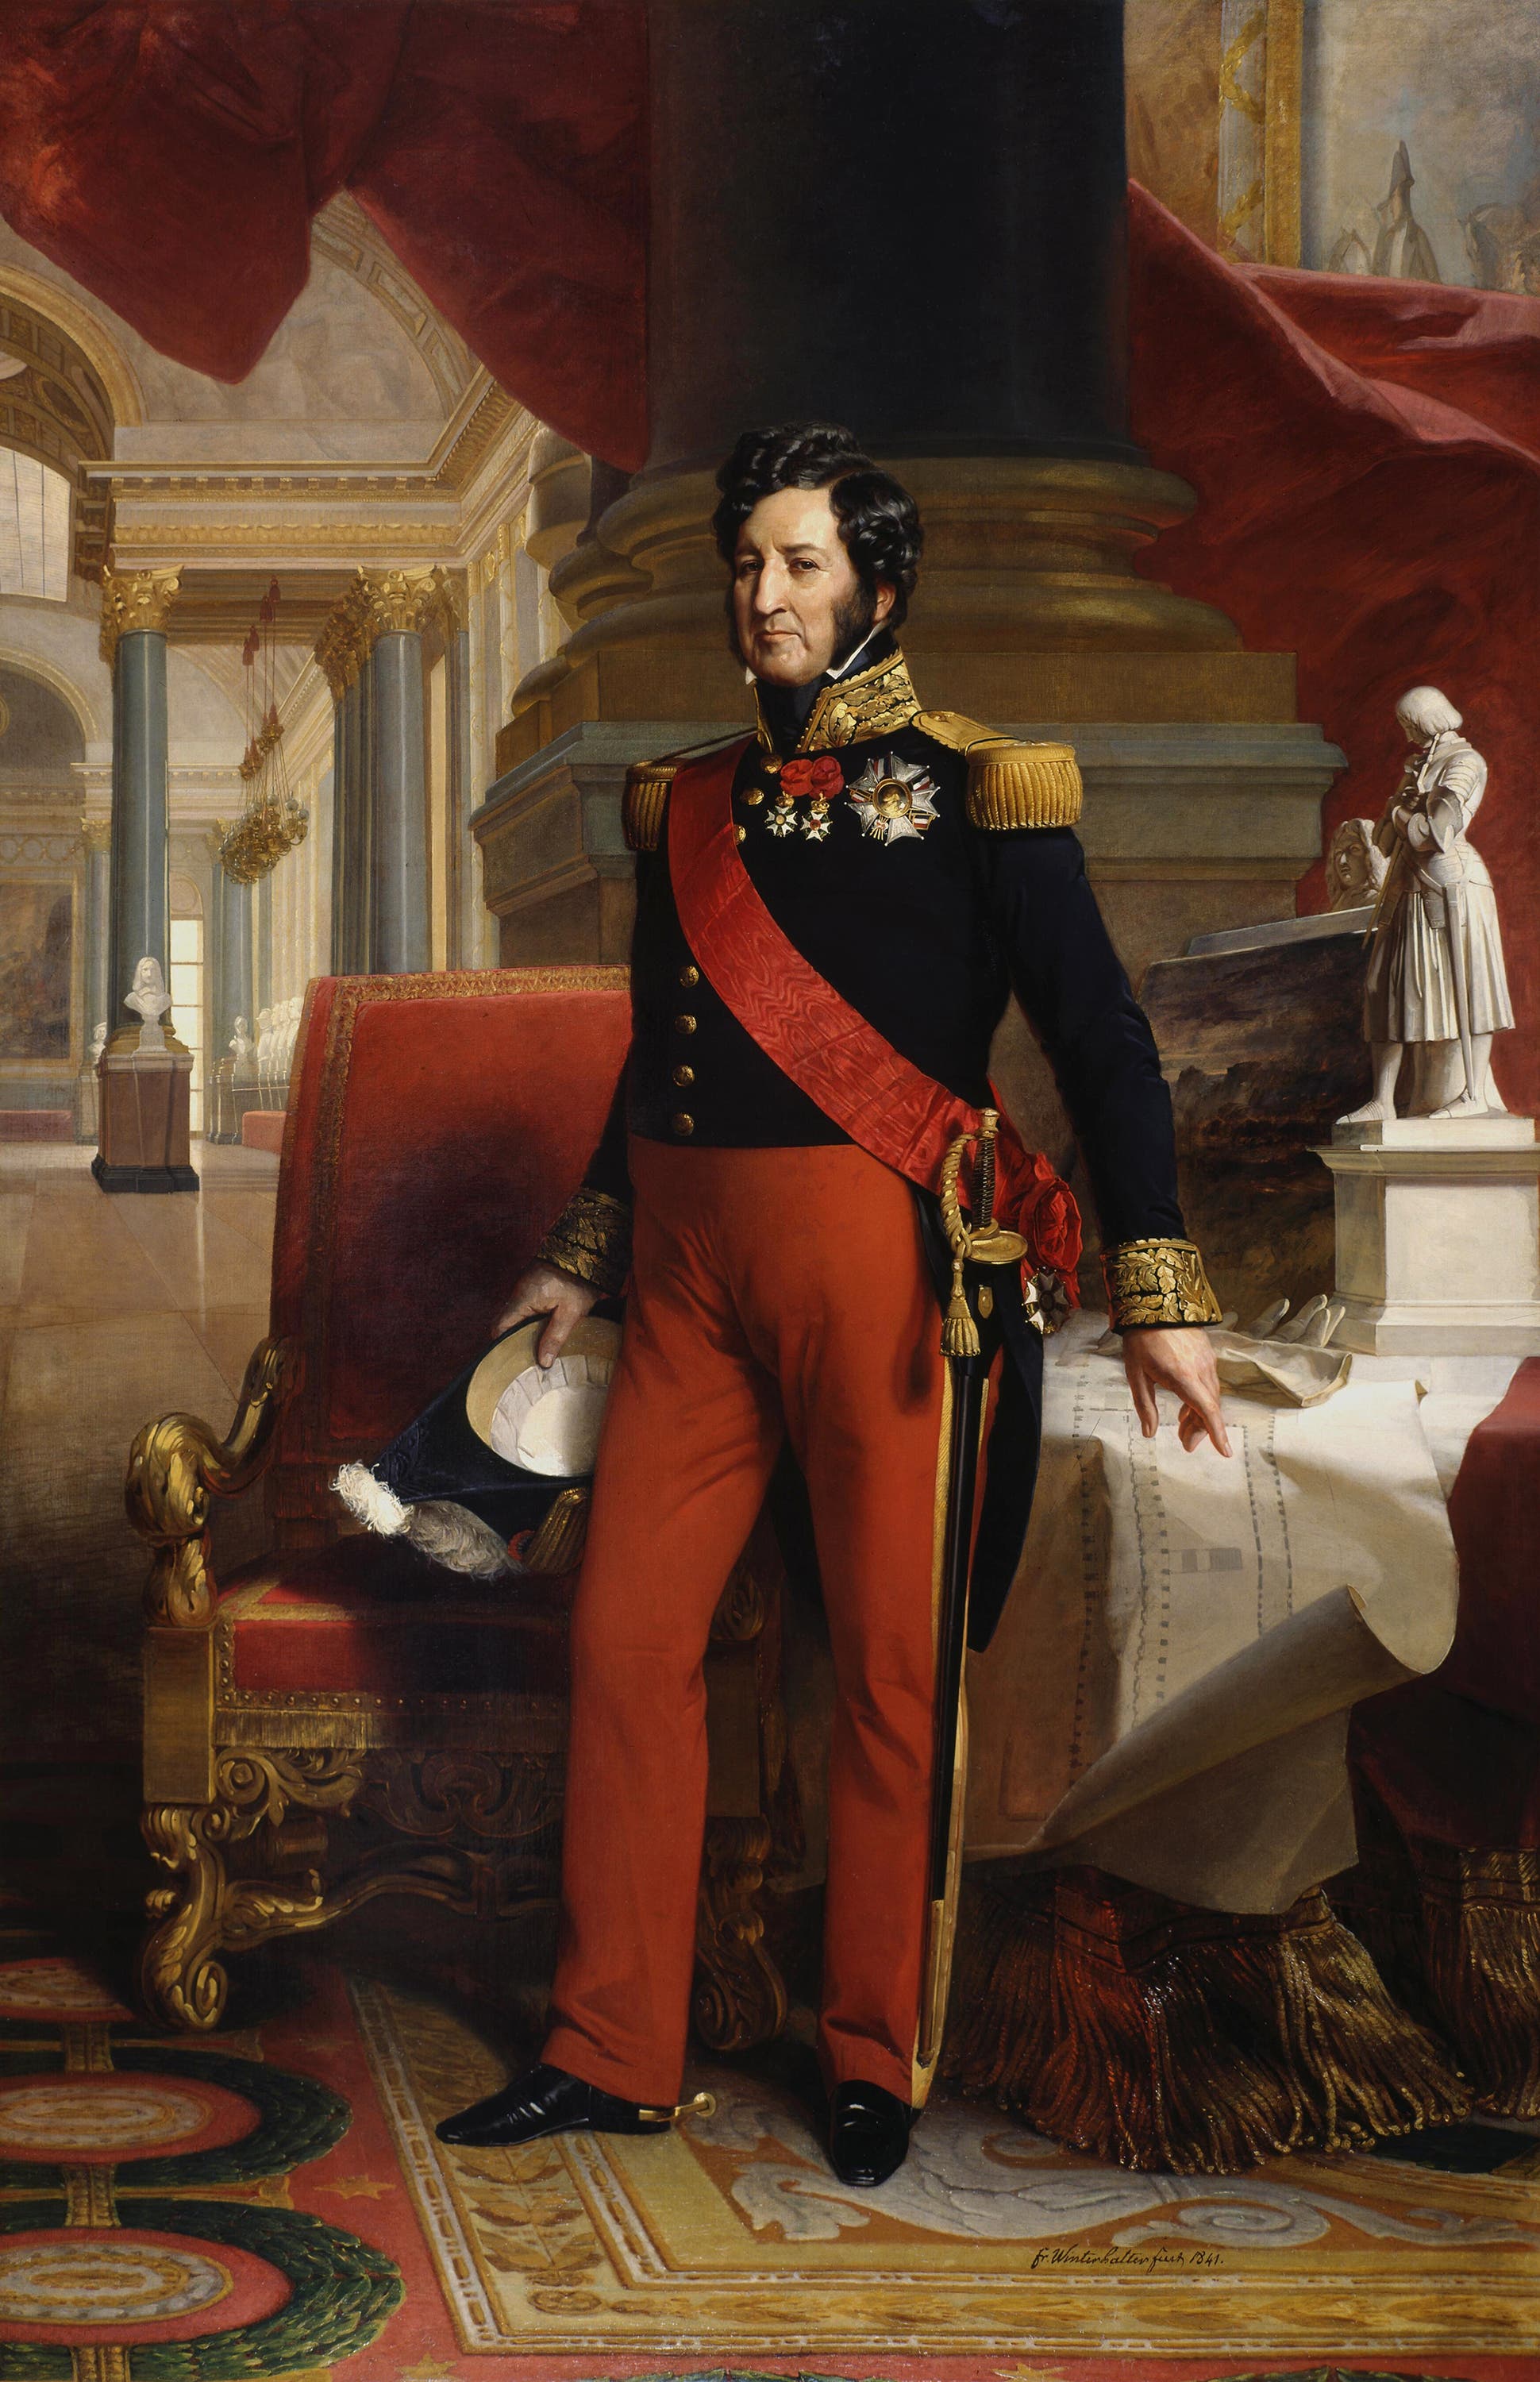 لوحة تجسد الملك الفرنسي لويس فيليب الأول